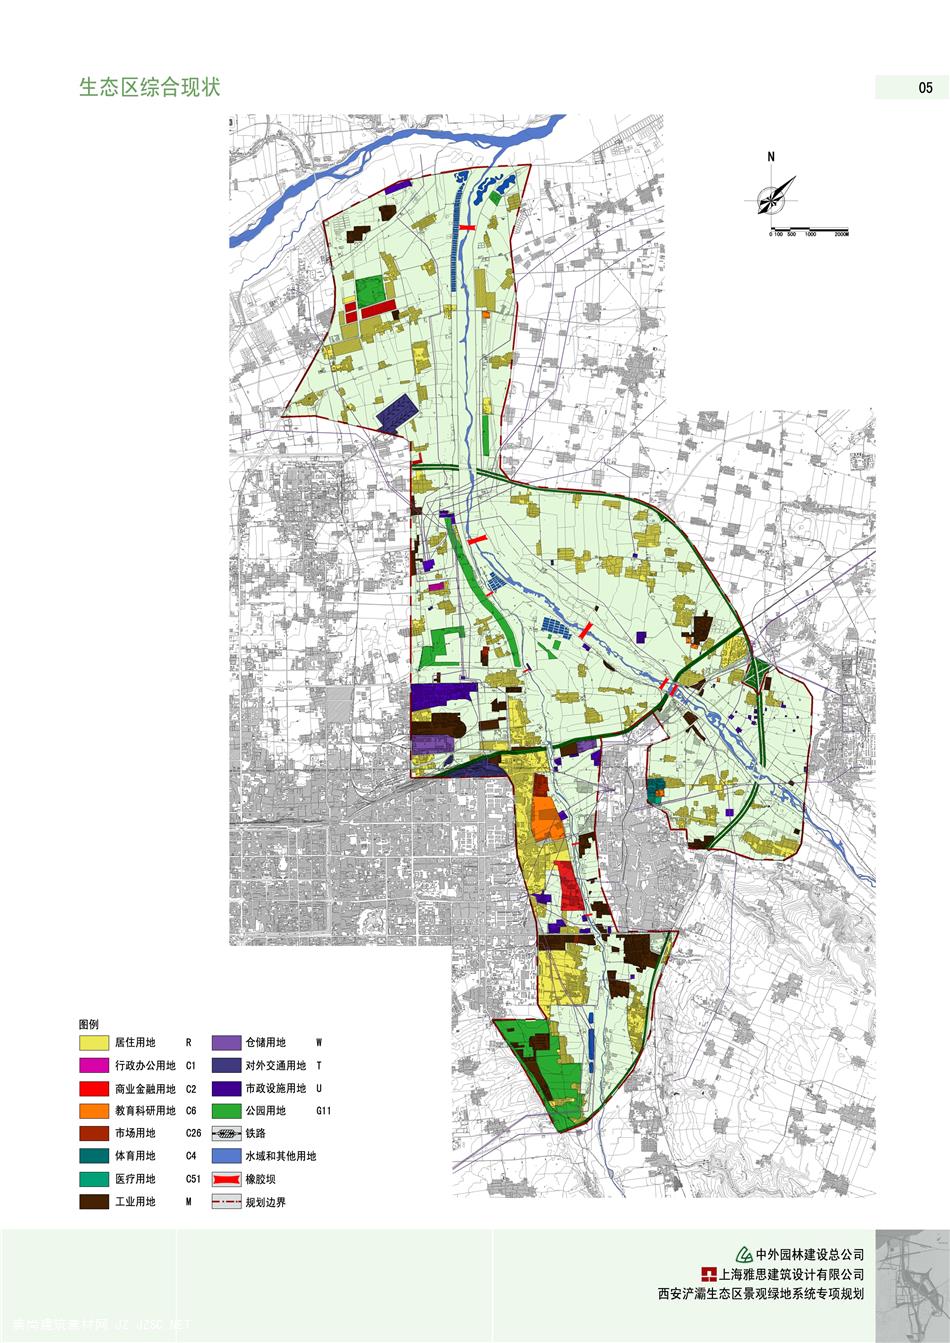 64西安浐灞生态区绿地系统规划